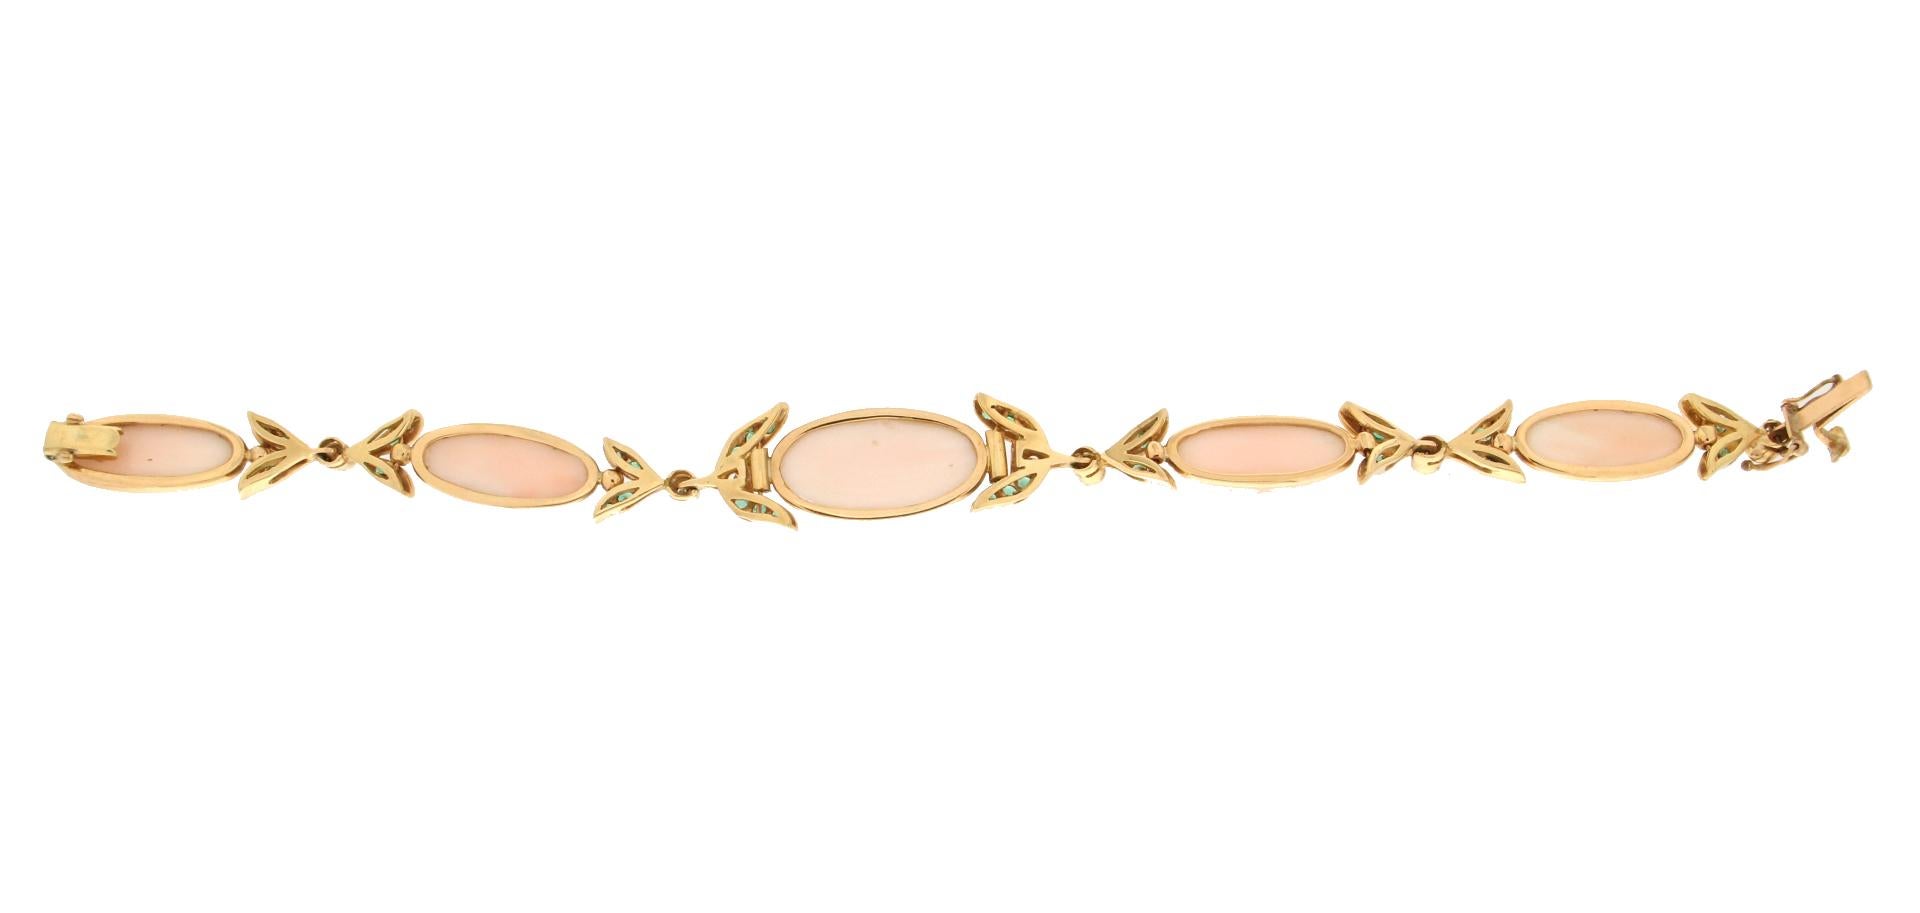 Taille brillant Bracelet manchette artisanal en or jaune 18 carats, corail rose et diamants avec émeraudes